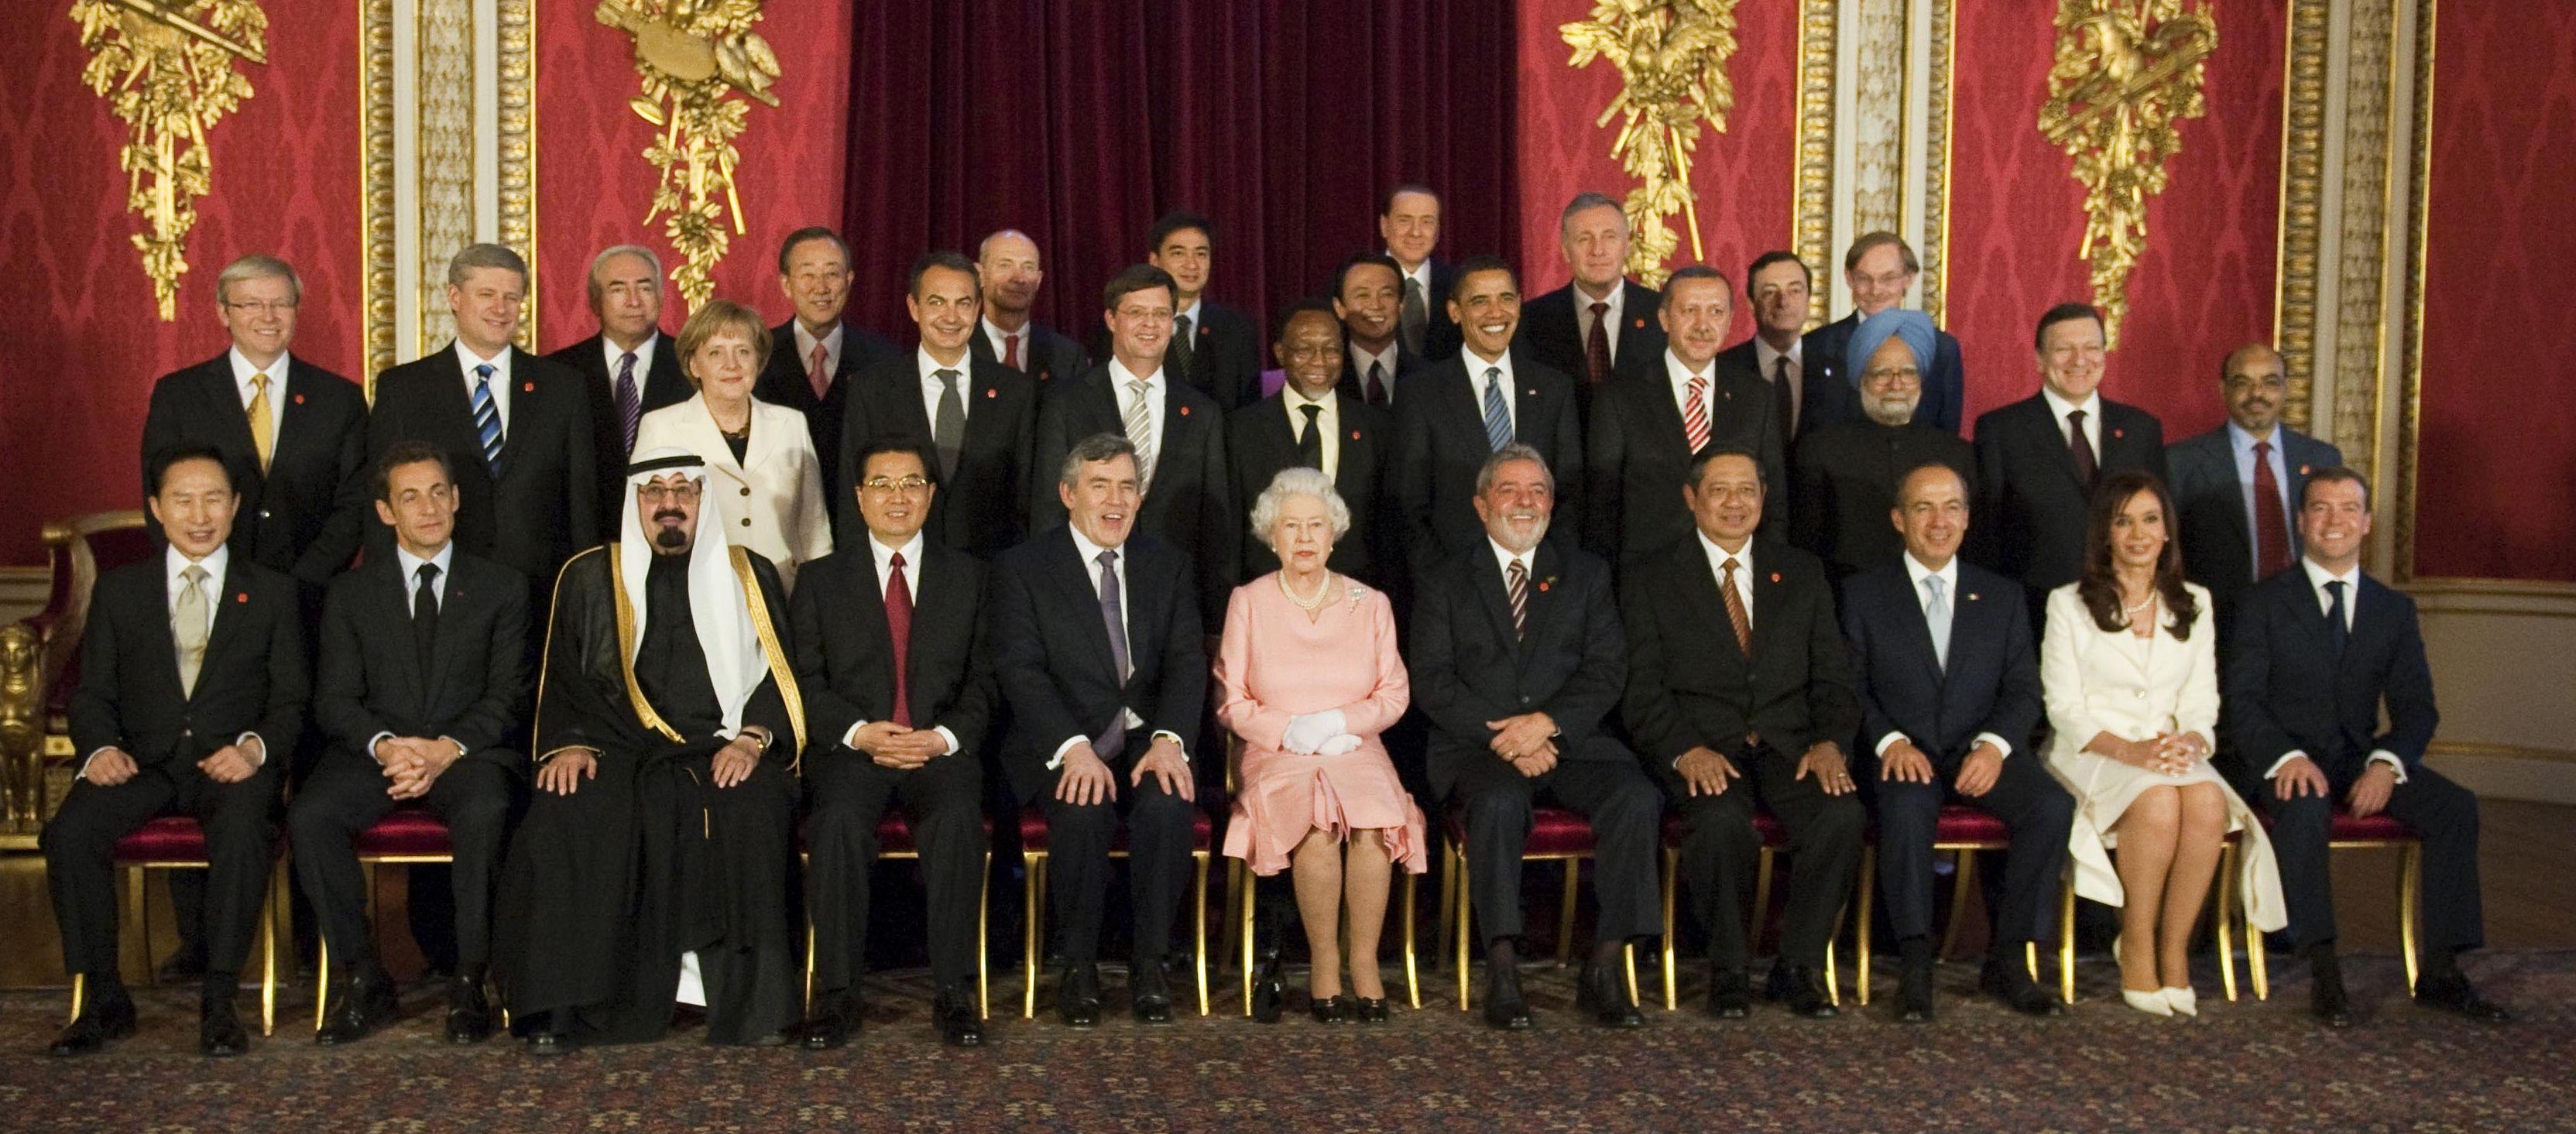 Лидеры стран и Королева Англии